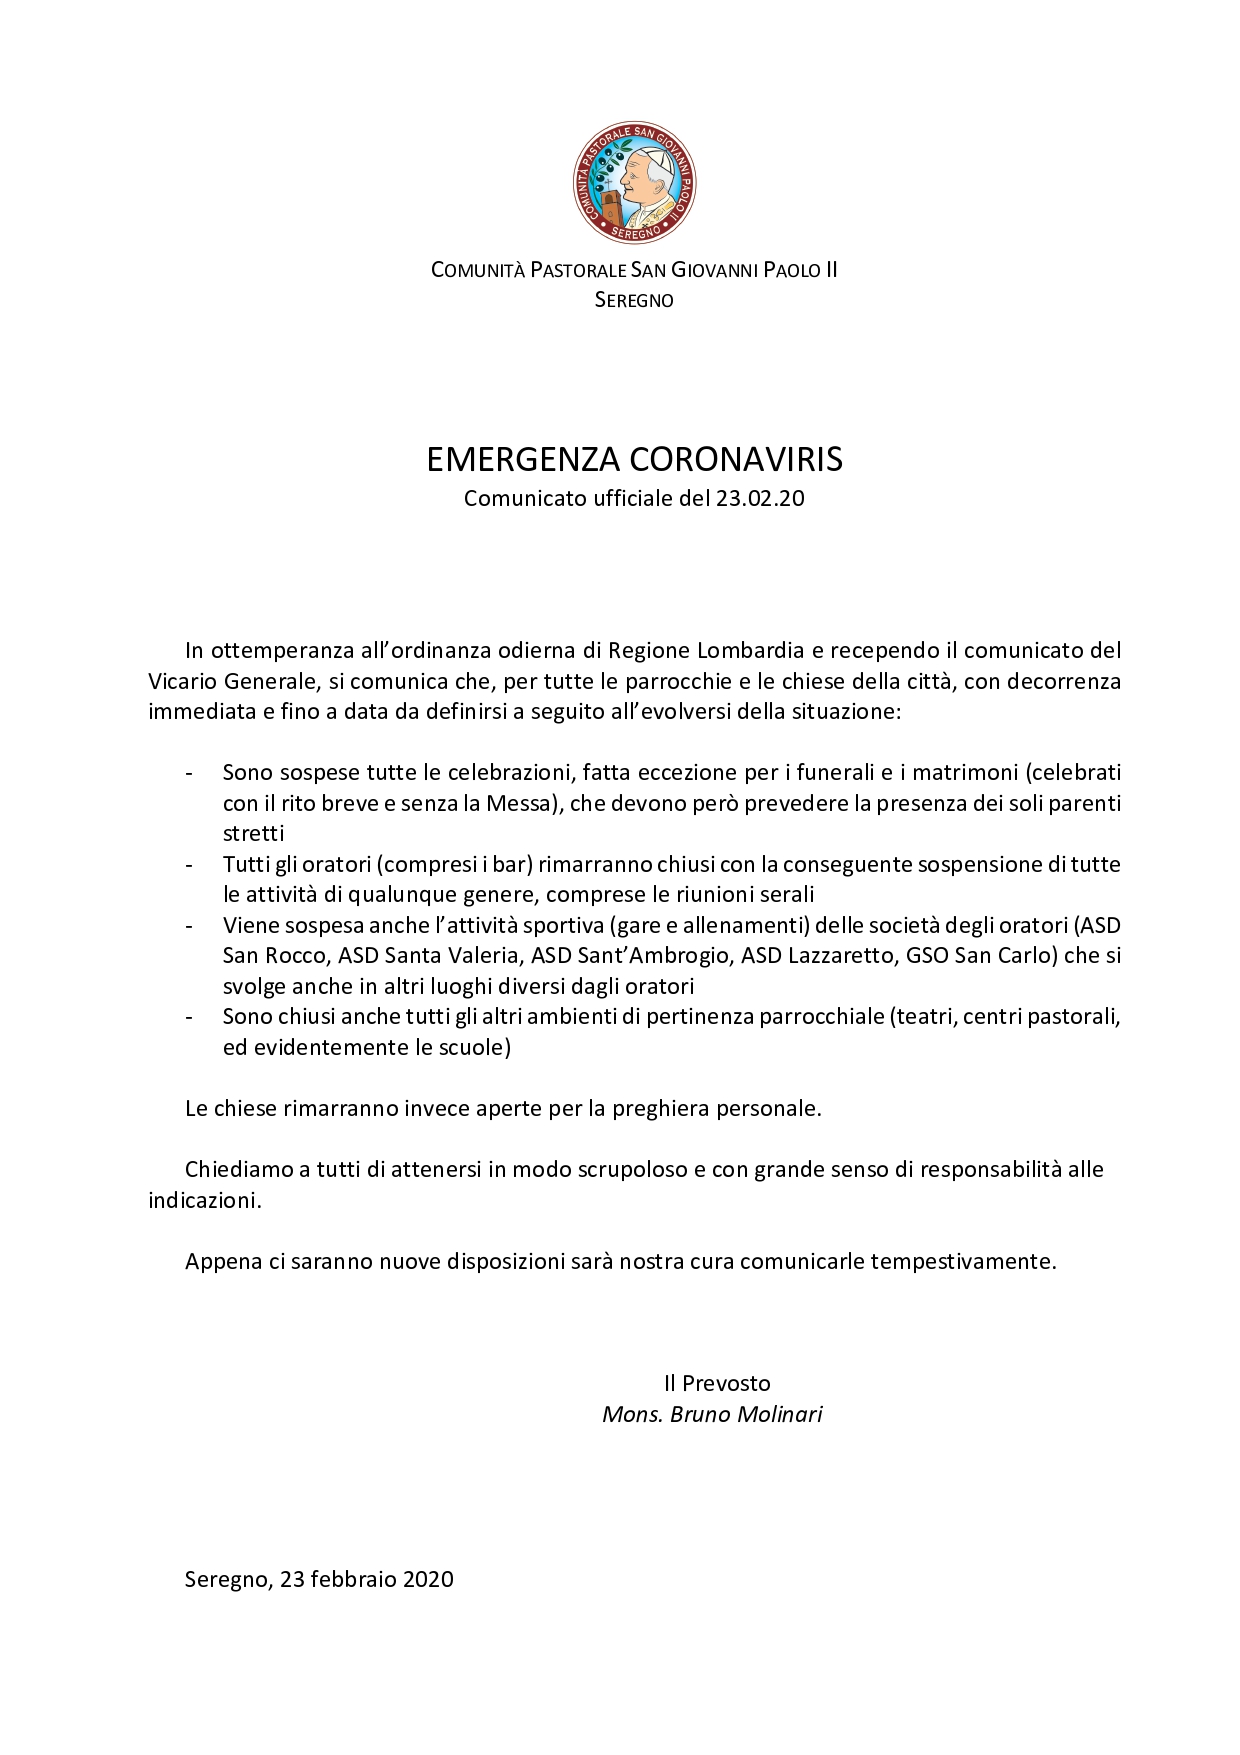 Comunicato Coronavirus 23.02.2020